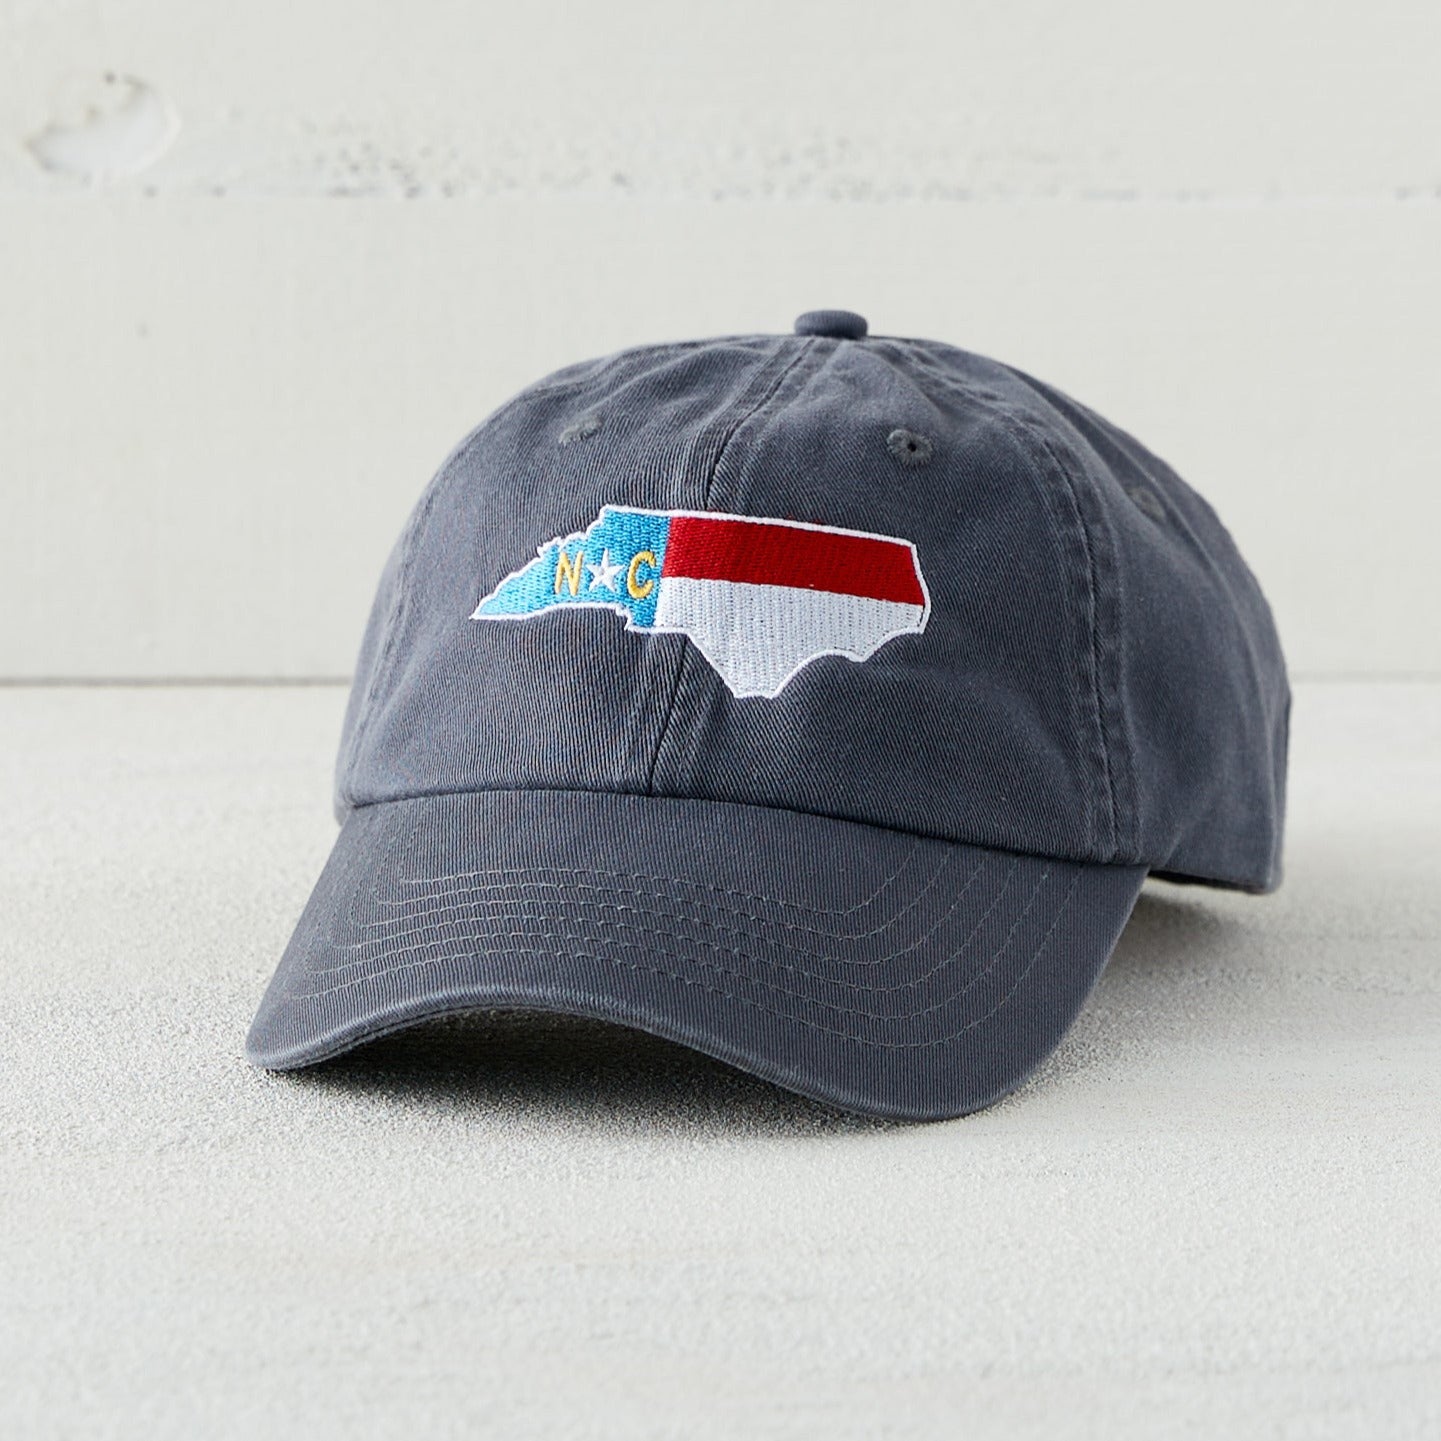 Classic North Carolina Gray Cap